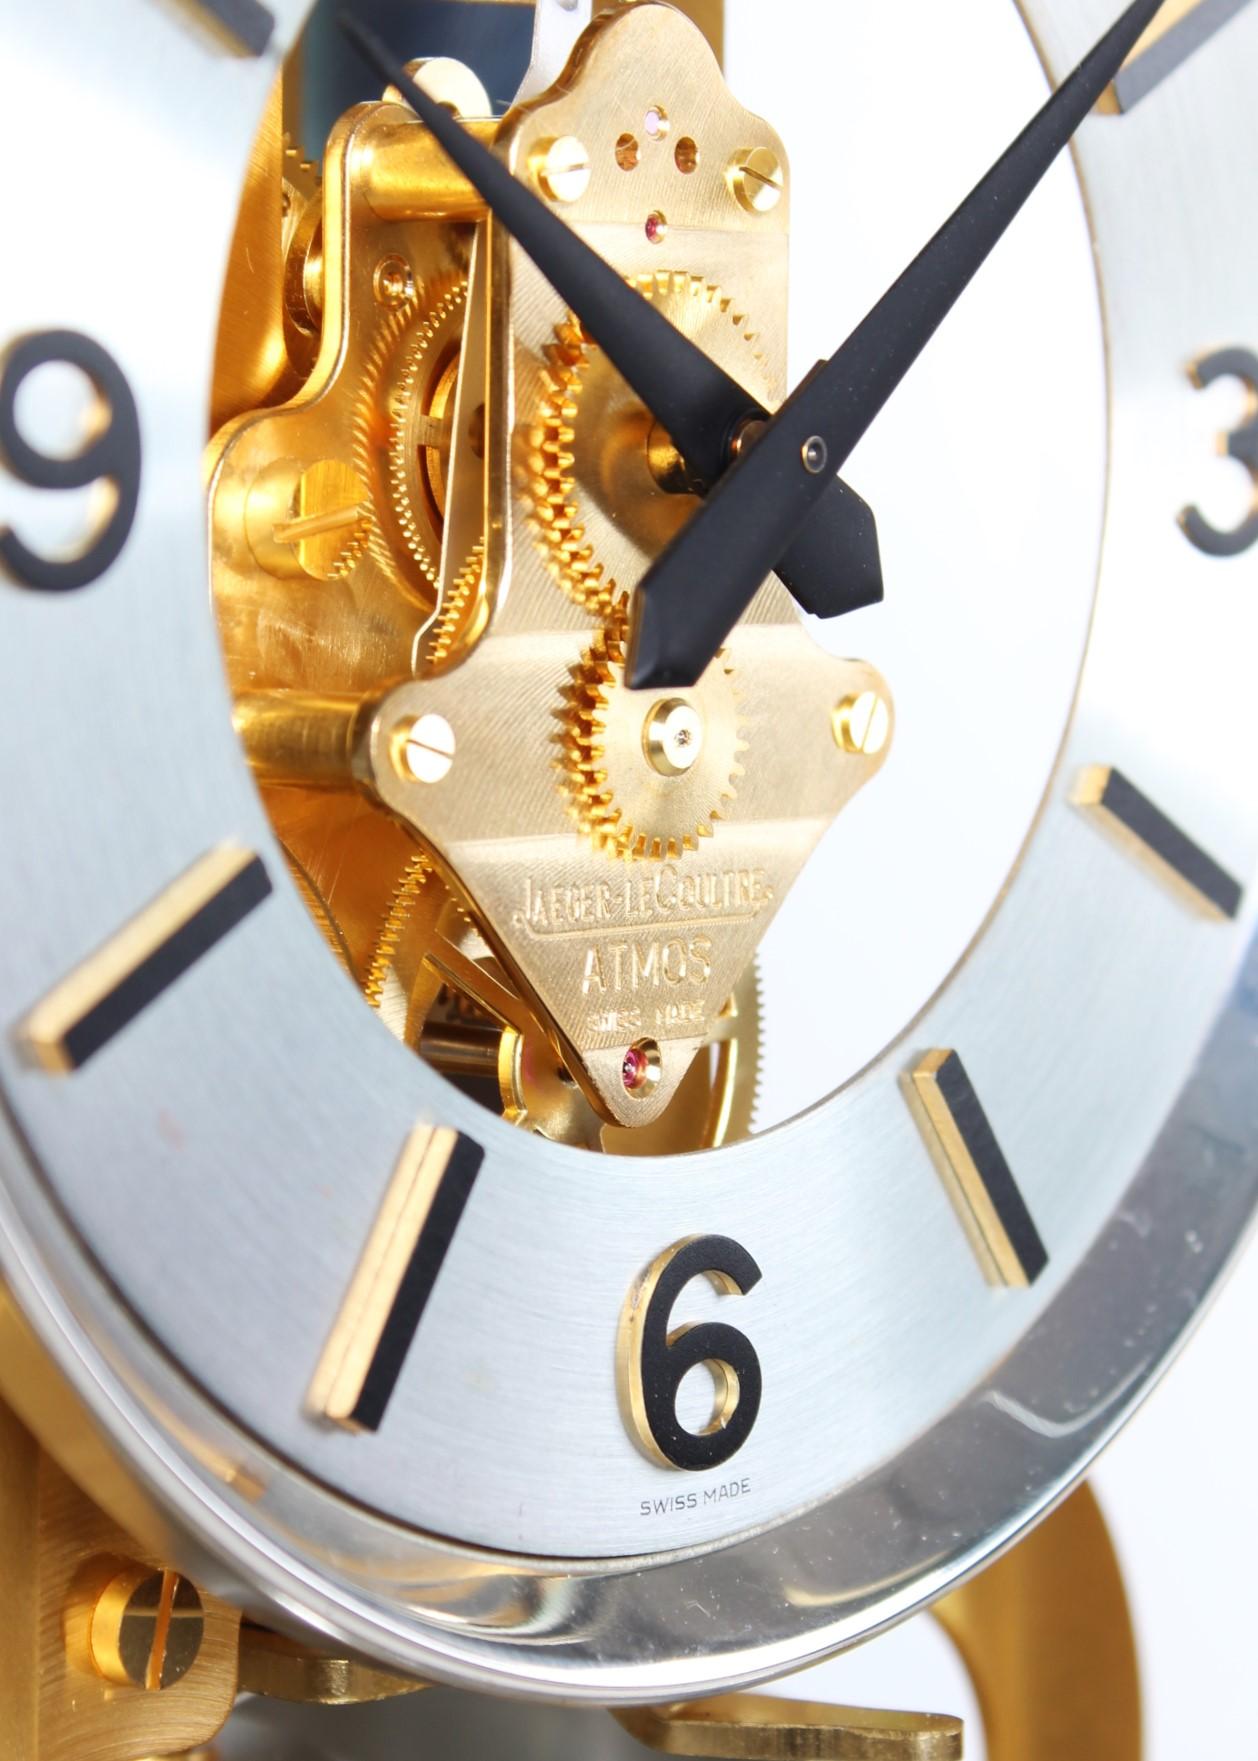 Fin du 20e siècle Jaeger LeCoultre, horloge Atmos bicolore, argent et or, fabriquée en 1978 en vente